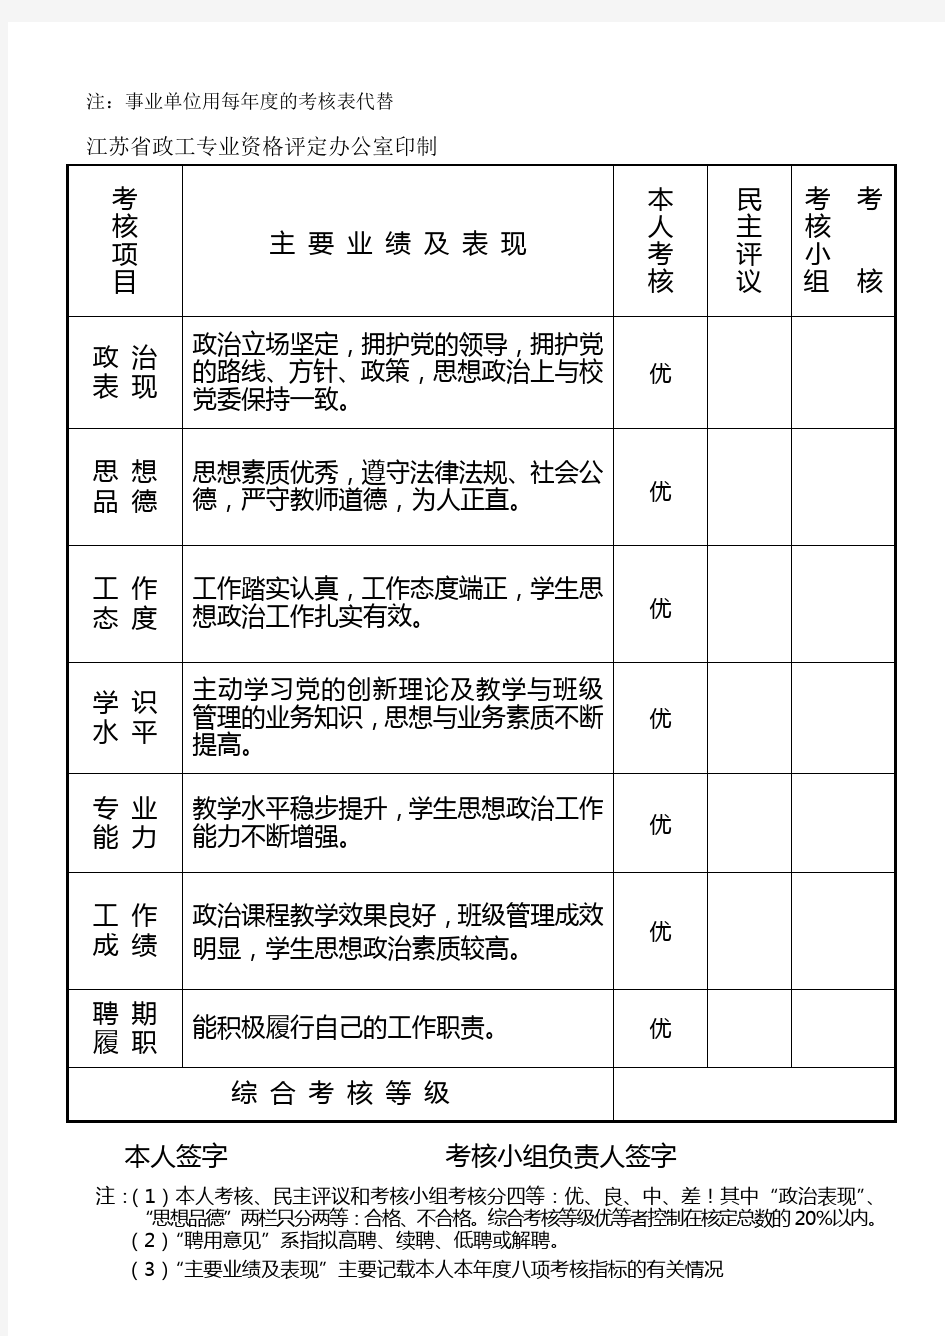 政工专业人员年度考核表(2006年度)